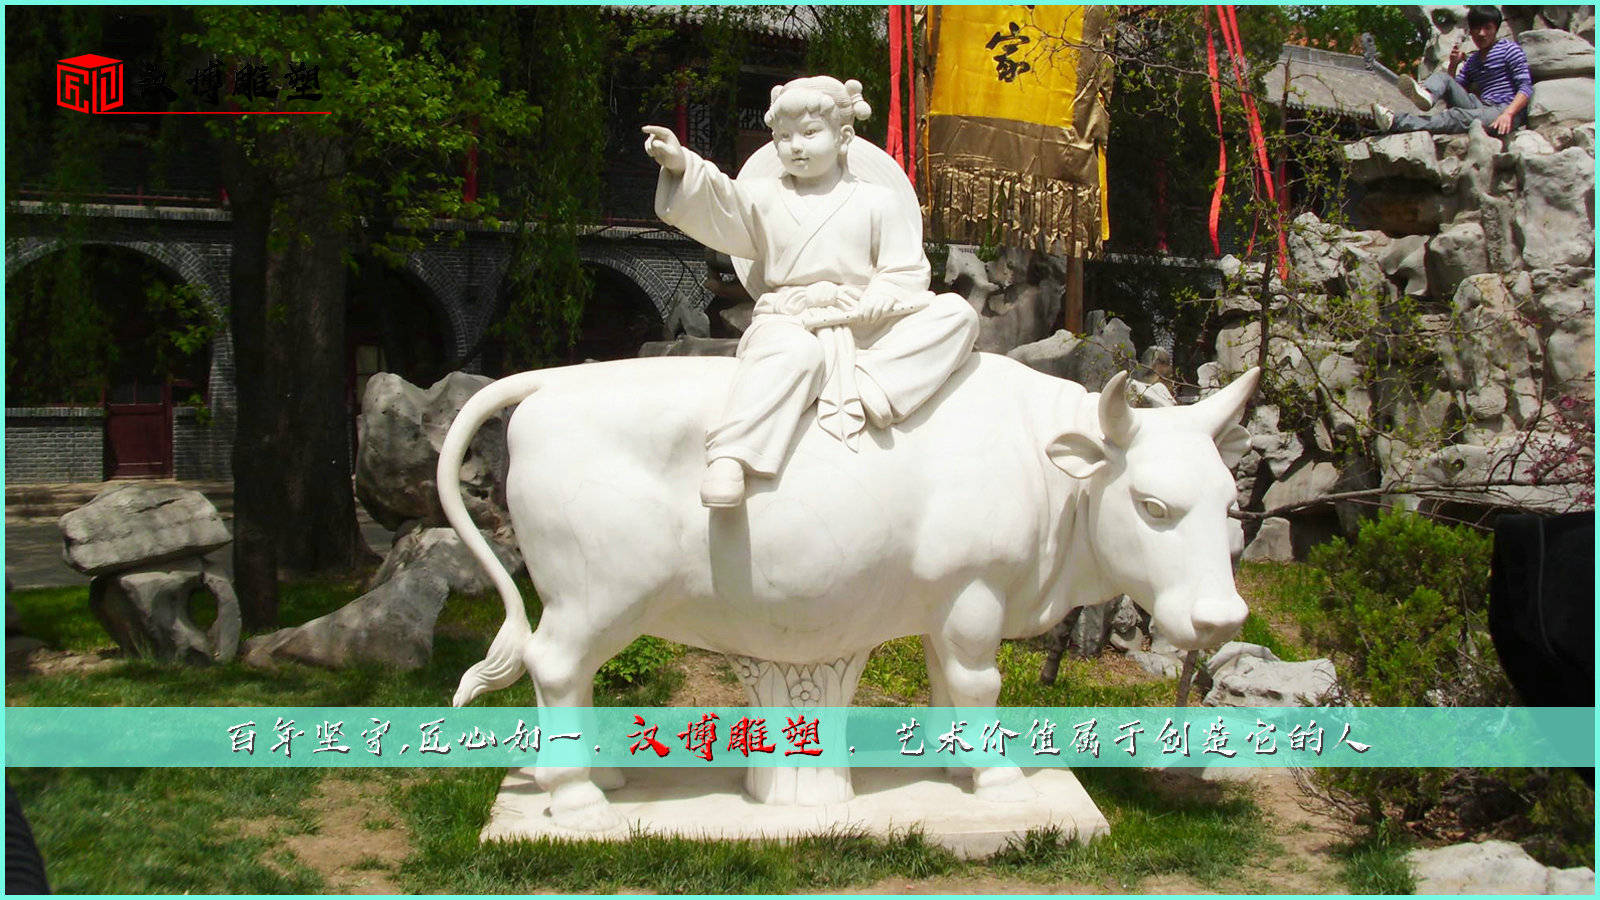 大型景观石雕,牧童骑牛雕像,雕刻工艺